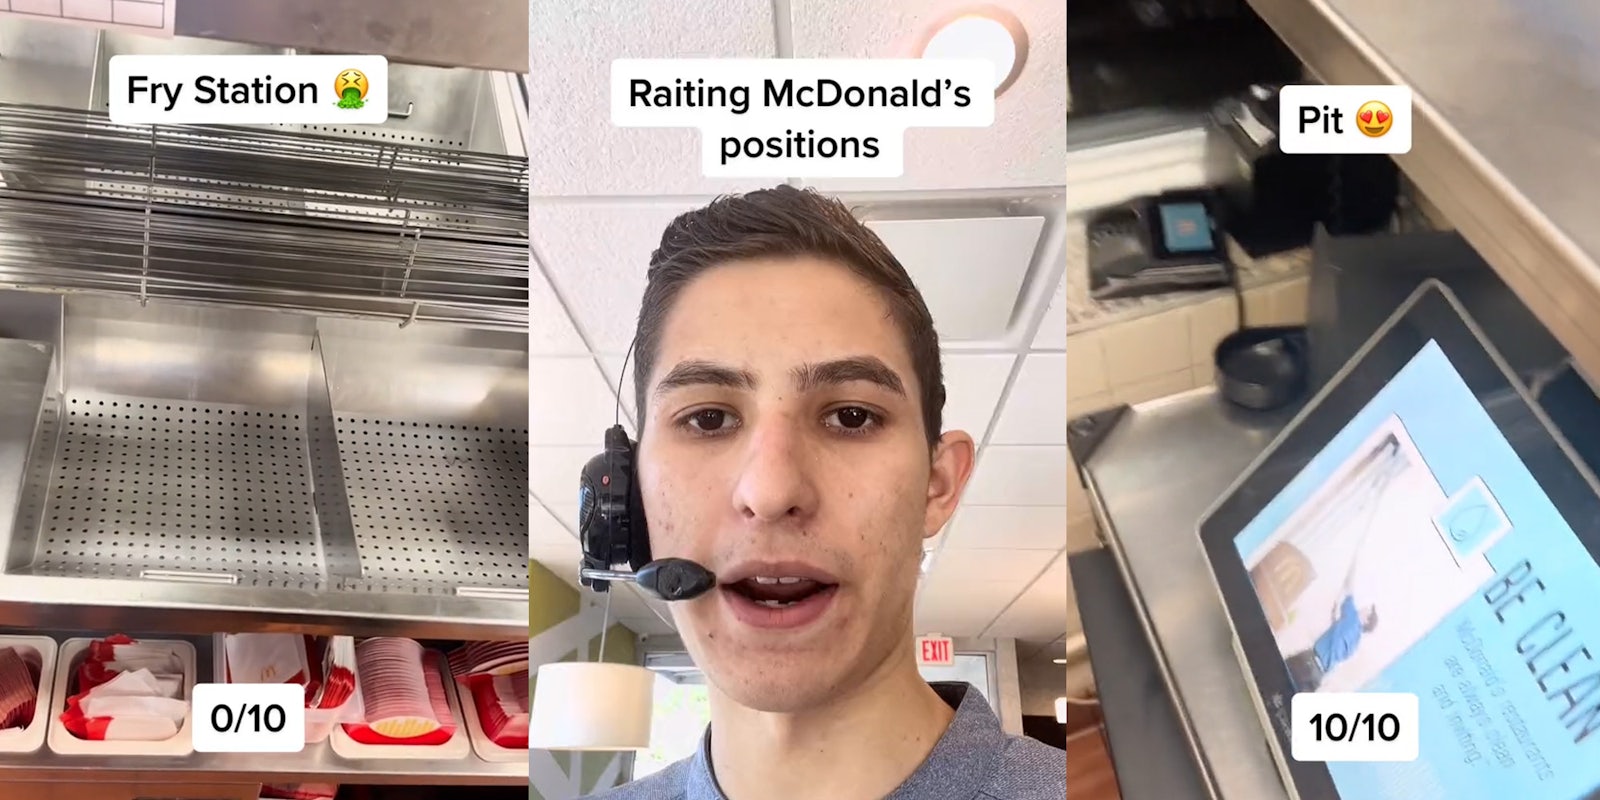 McDonald's fry station caption 'Fry Station 0/10' (l) McDonald's worker speaking caption 'Raiting McDonald's positions' (c) McDonald's pit caption 'Pit 10/10' (r)